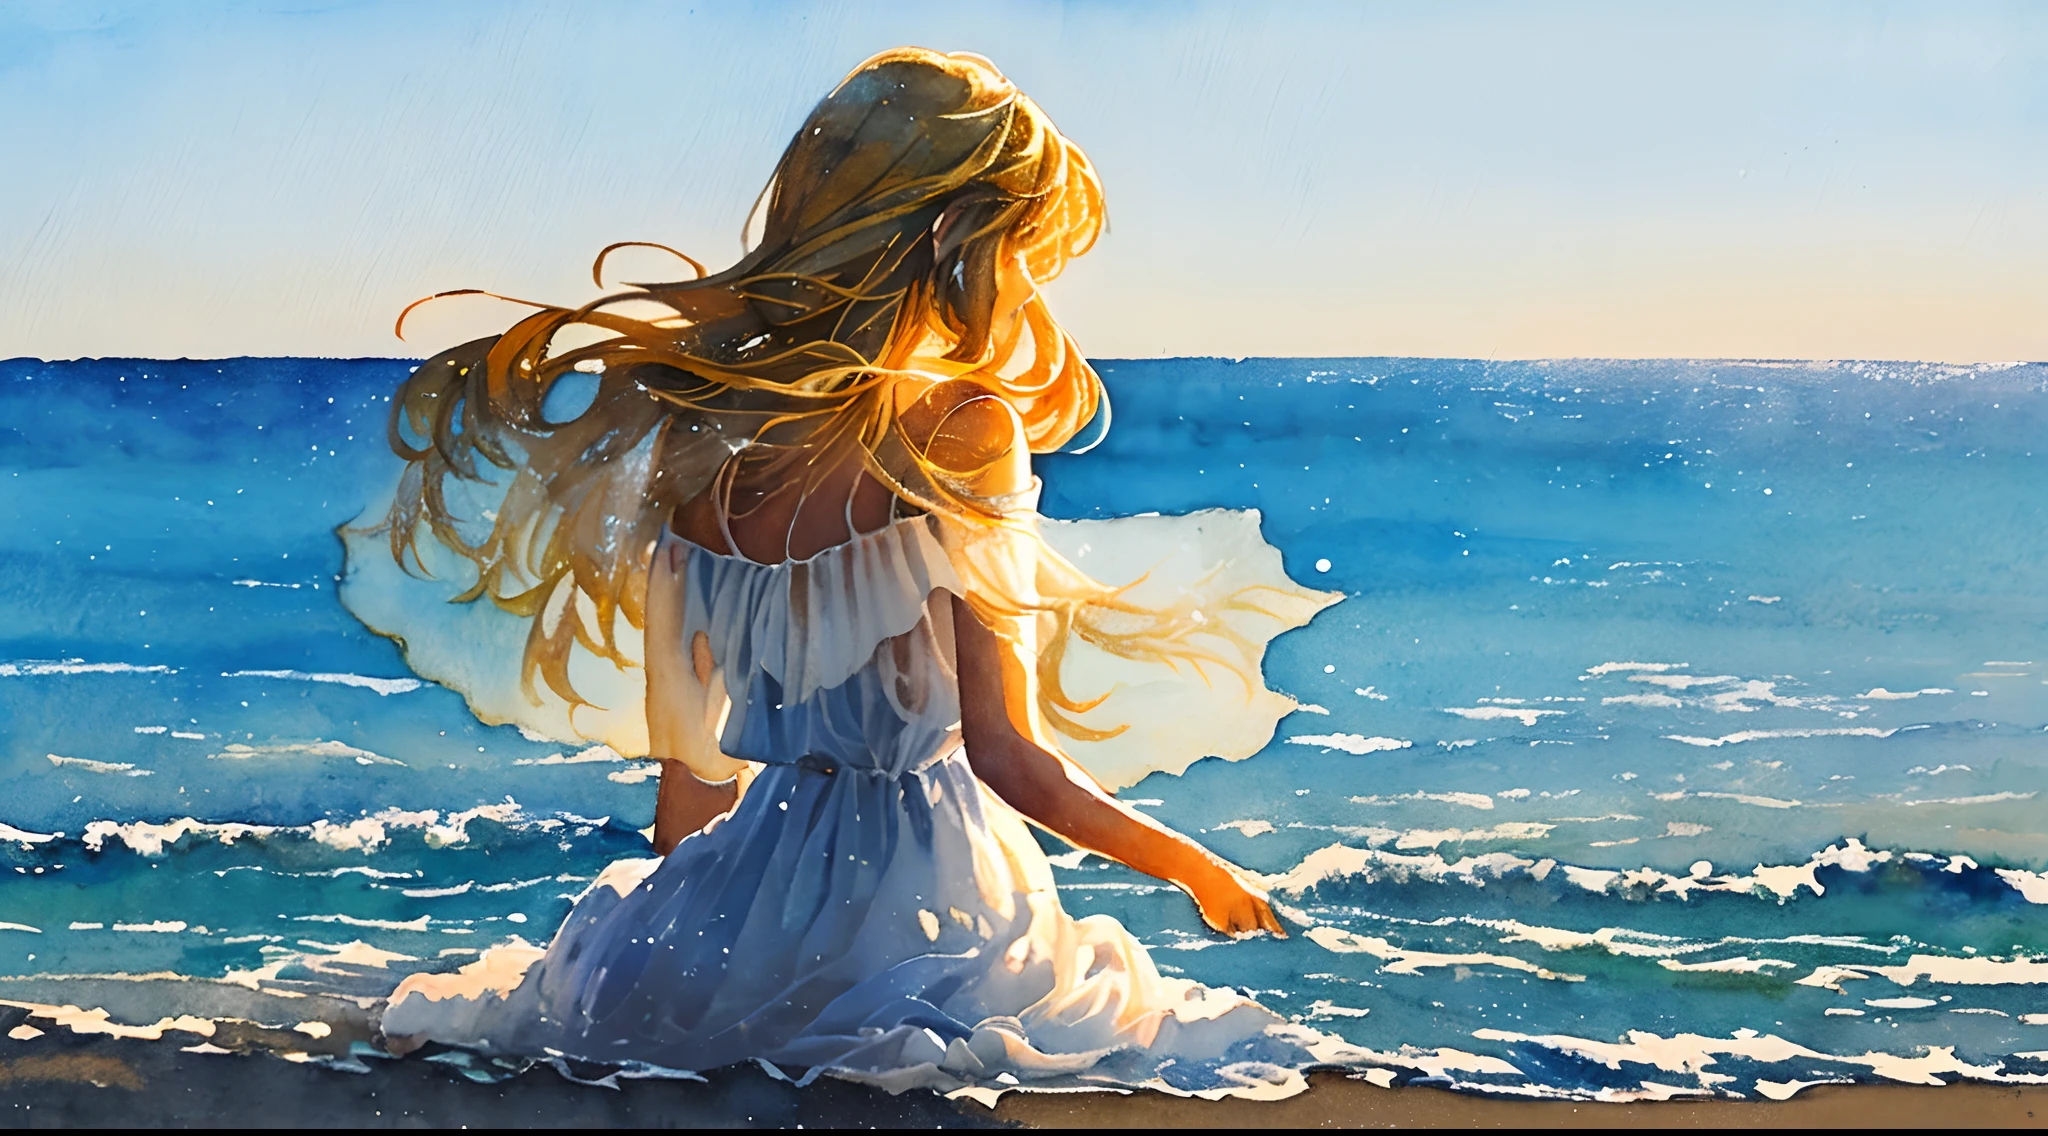 杰作, 简约的图形艺术, ((水彩画)),((笔触)), 最美丽的女人坐在海滩上看海的水彩画, 白色的 ((透明透视连衣裙)) 随风飘荡, long blond hair 随风飘荡, 白色的 background, 背光, 体积照明